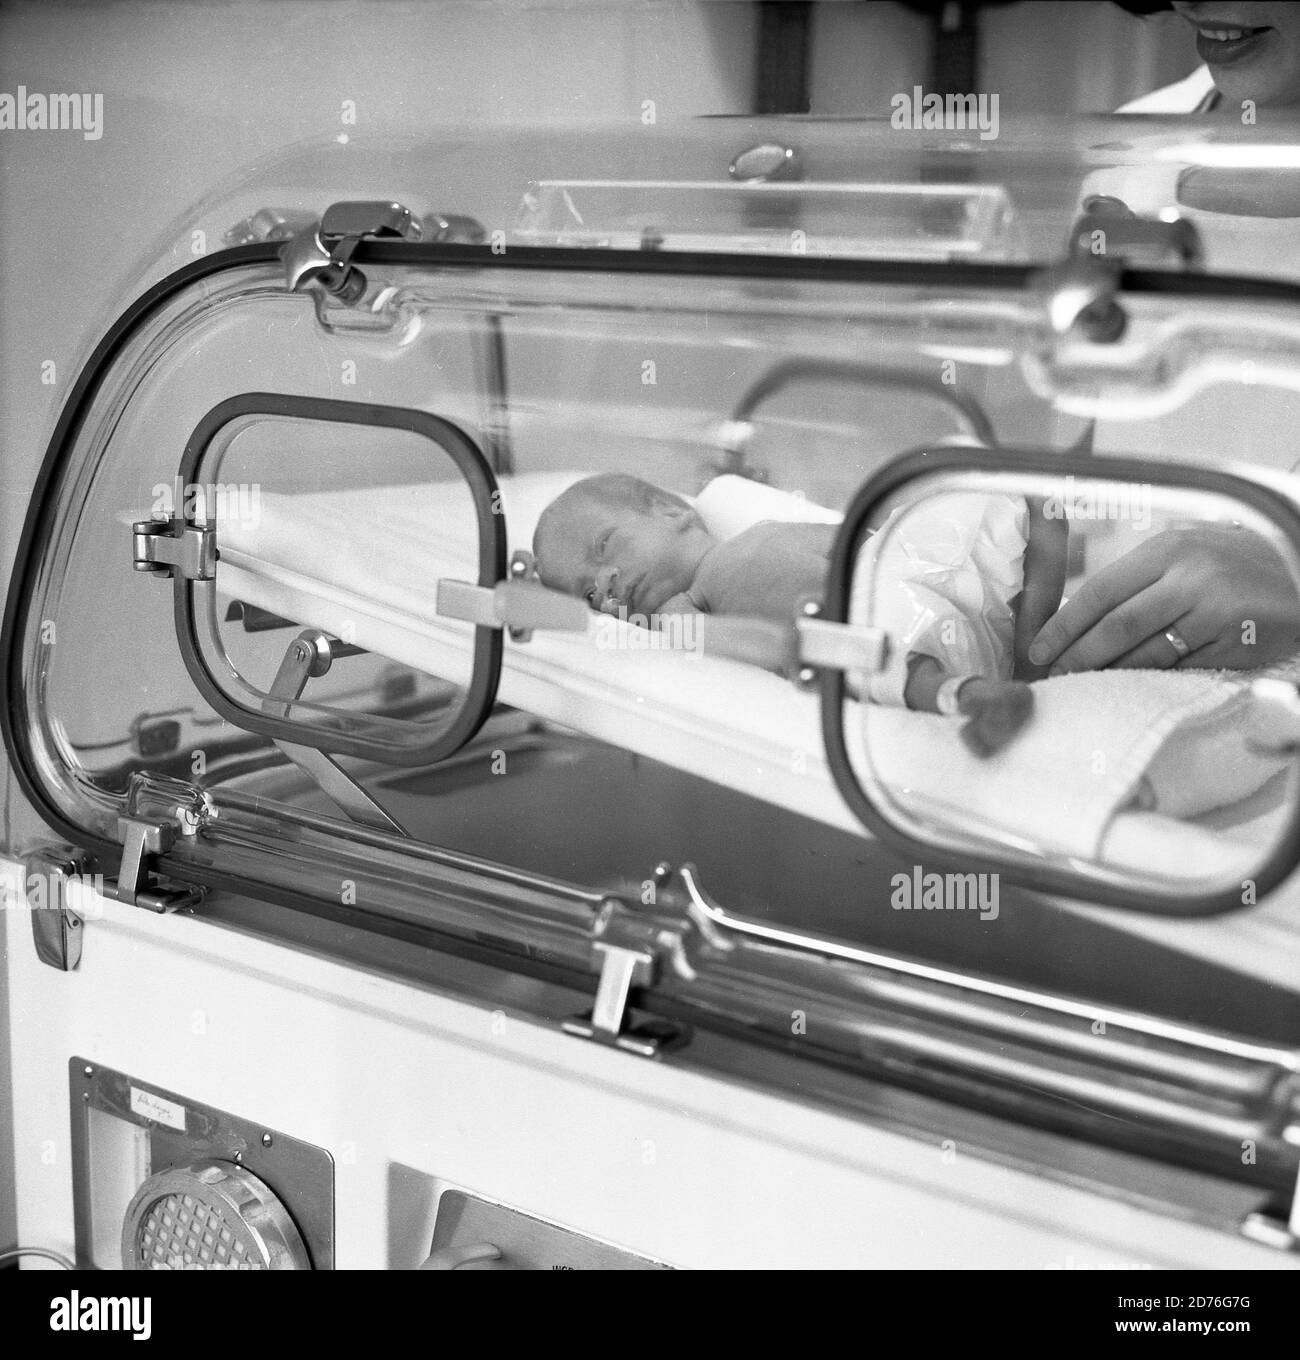 anni '70, storico, un neonato prematuro in un incubatore. Si può vedere quanto è piccolo il bambino prematuro confrontando la dimensione dei suoi piedi gambe con le dita della mano dell'infermiere visto nella figura a destra. Un incubatore è un'apparecchiatura medica che protegge la preemie da possibili infezioni e allergeni o da un eccessivo rumore di livelli di luce che potrebbero causare danni. Inoltre, vengono nutriti in incubatori per mantenerli caldi mentre l'umidità dell'aria è regolata in modo da essere un ambiente controllato e protettivo per la loro cura. Foto Stock